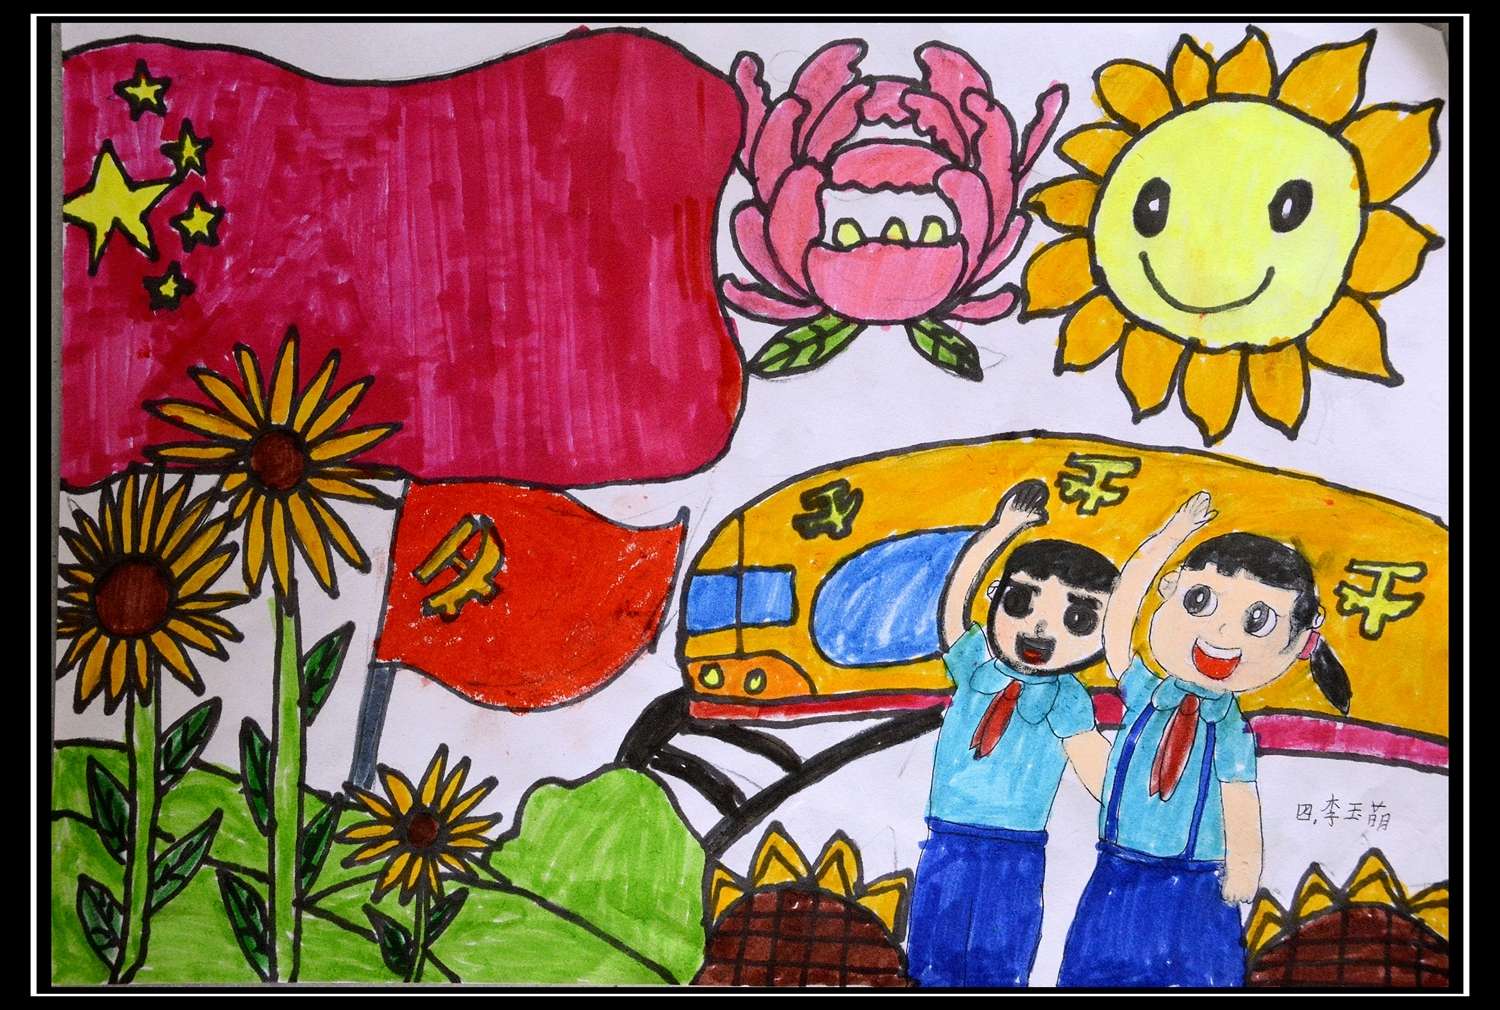 红心向党,在阳光下成长!农村小学生用画笔绘出心中的党和祖国